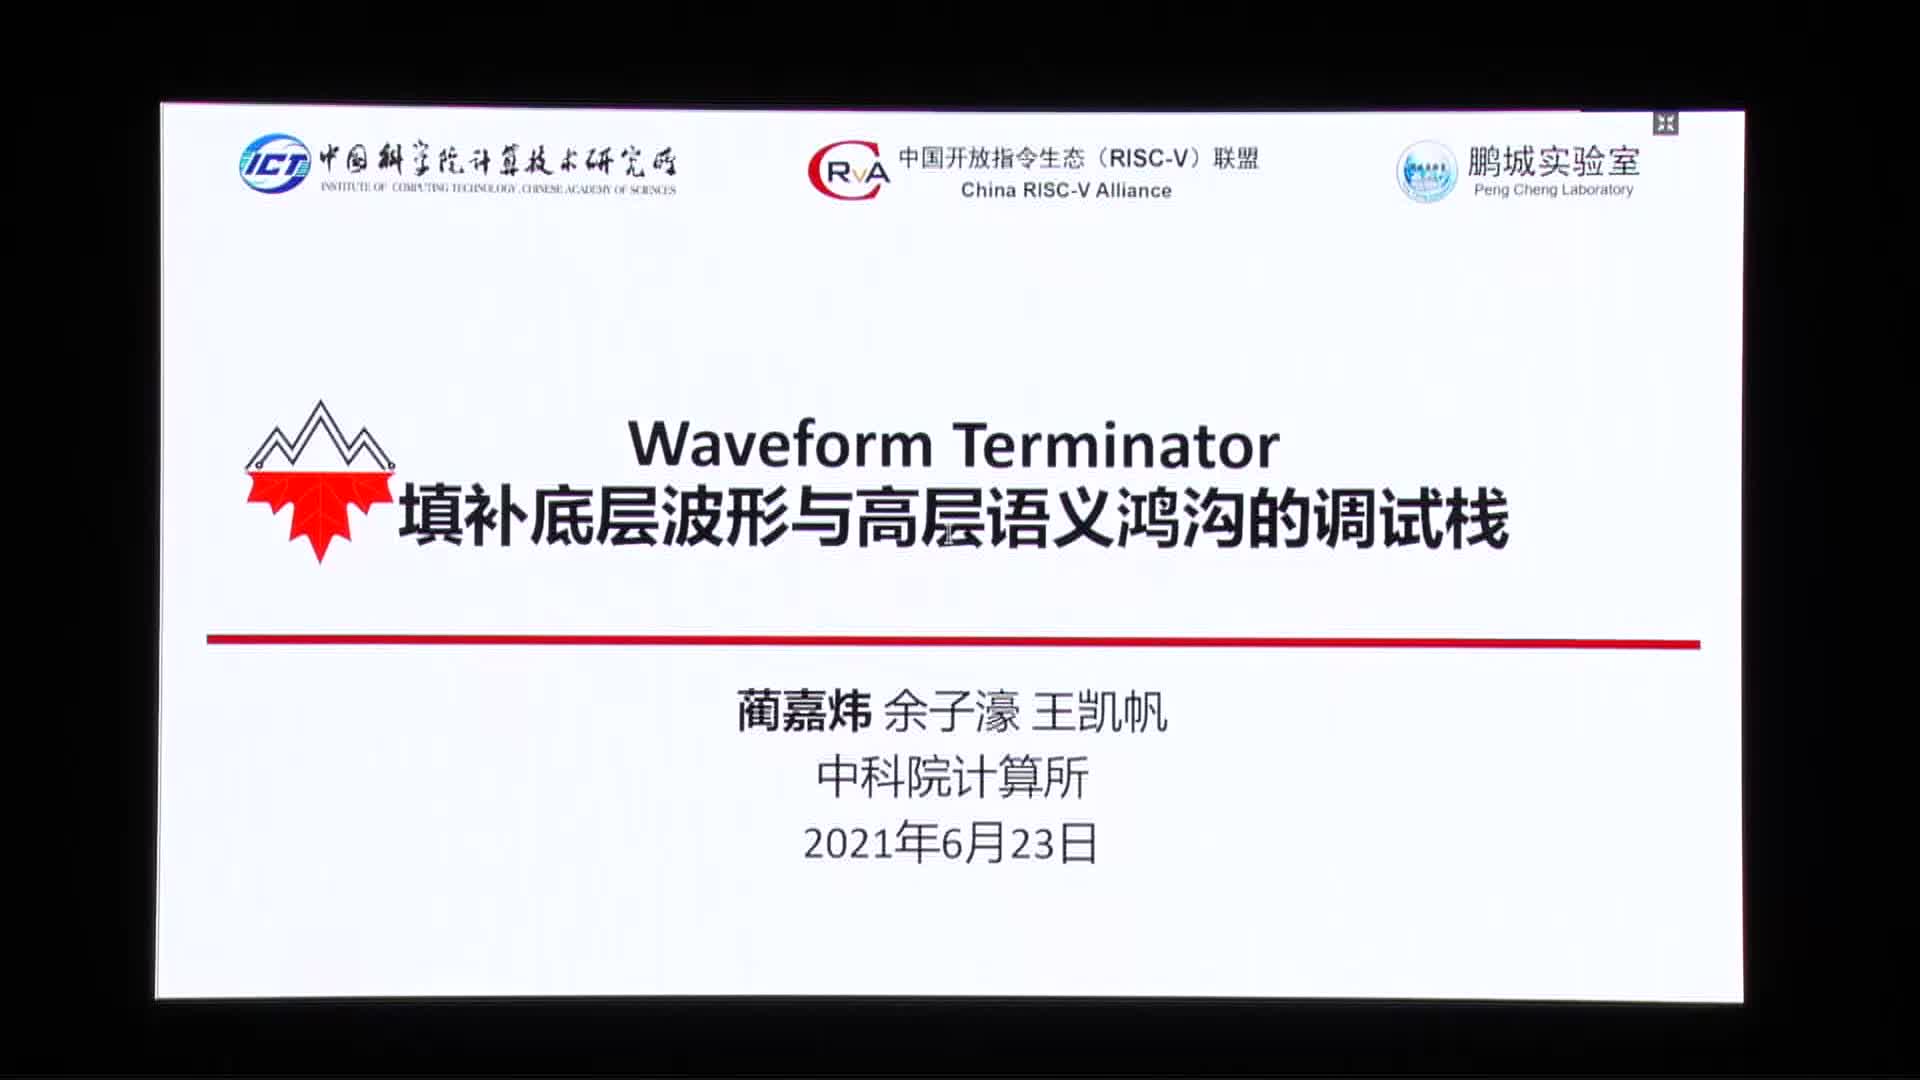 蔺嘉炜 - Waveform Terminator 填补底层波形和高层语义鸿沟的调试栈